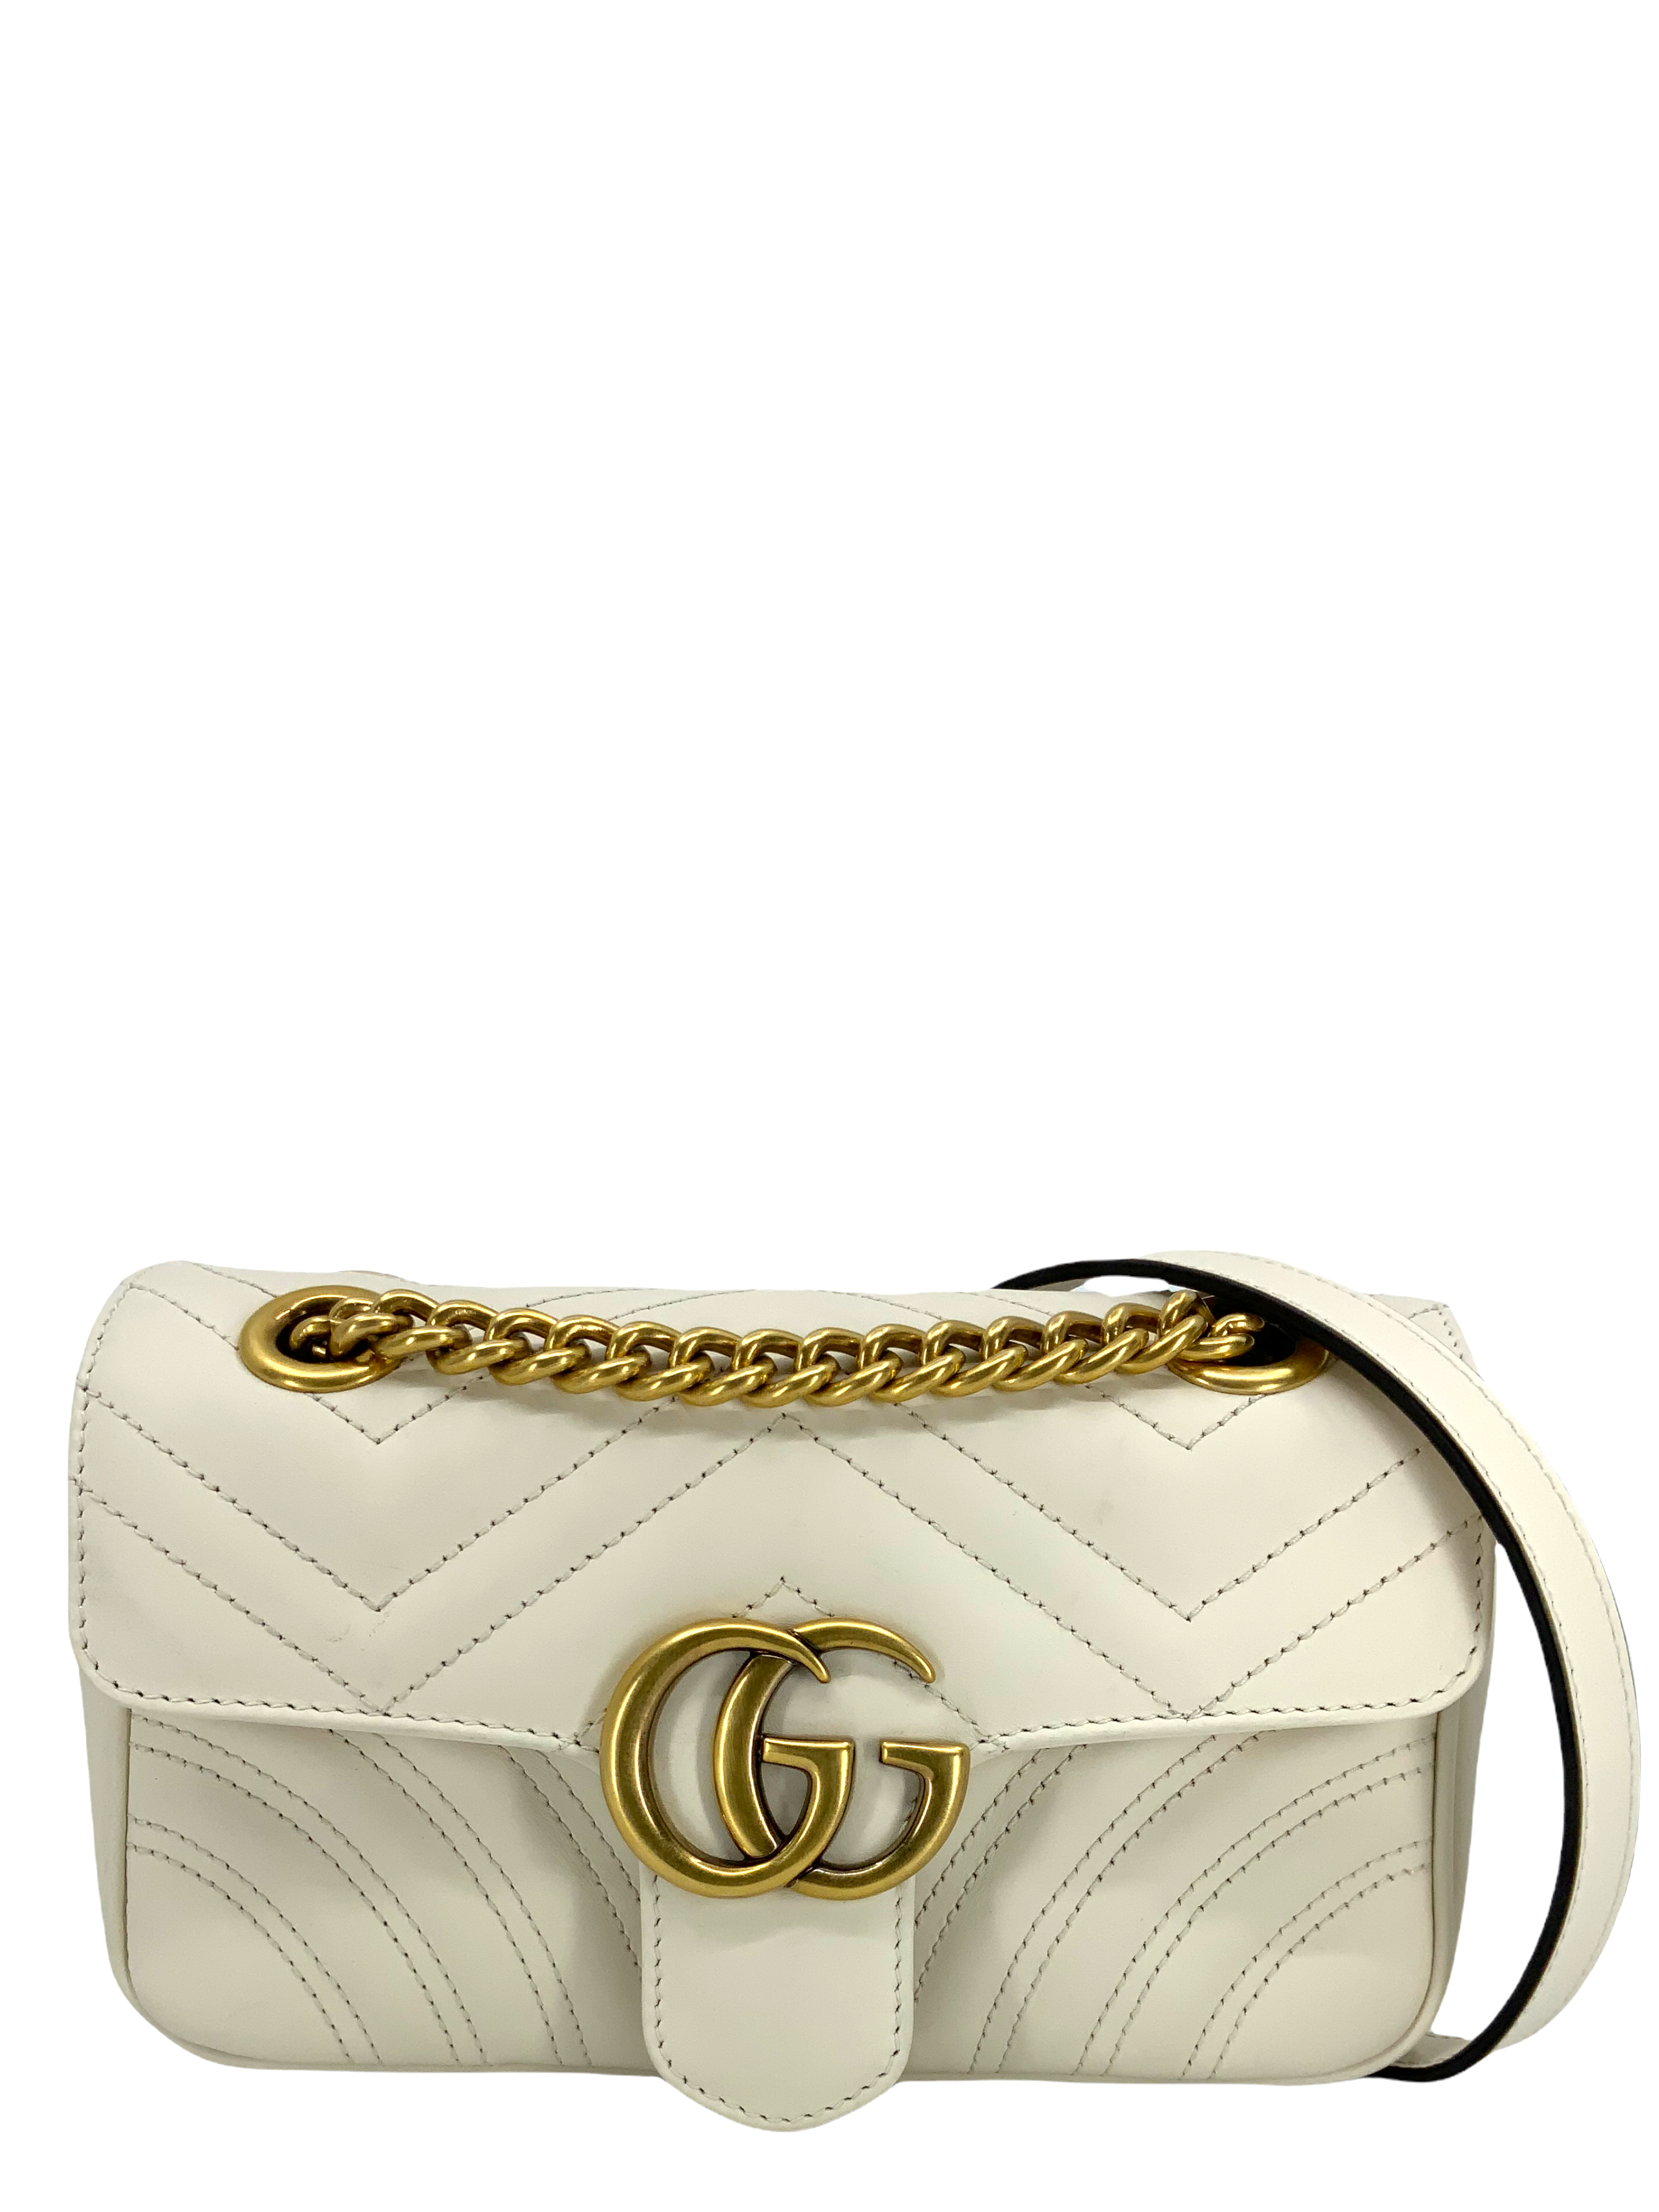 Gucci Interlocking G Mini Heart Shoulder Bag - White